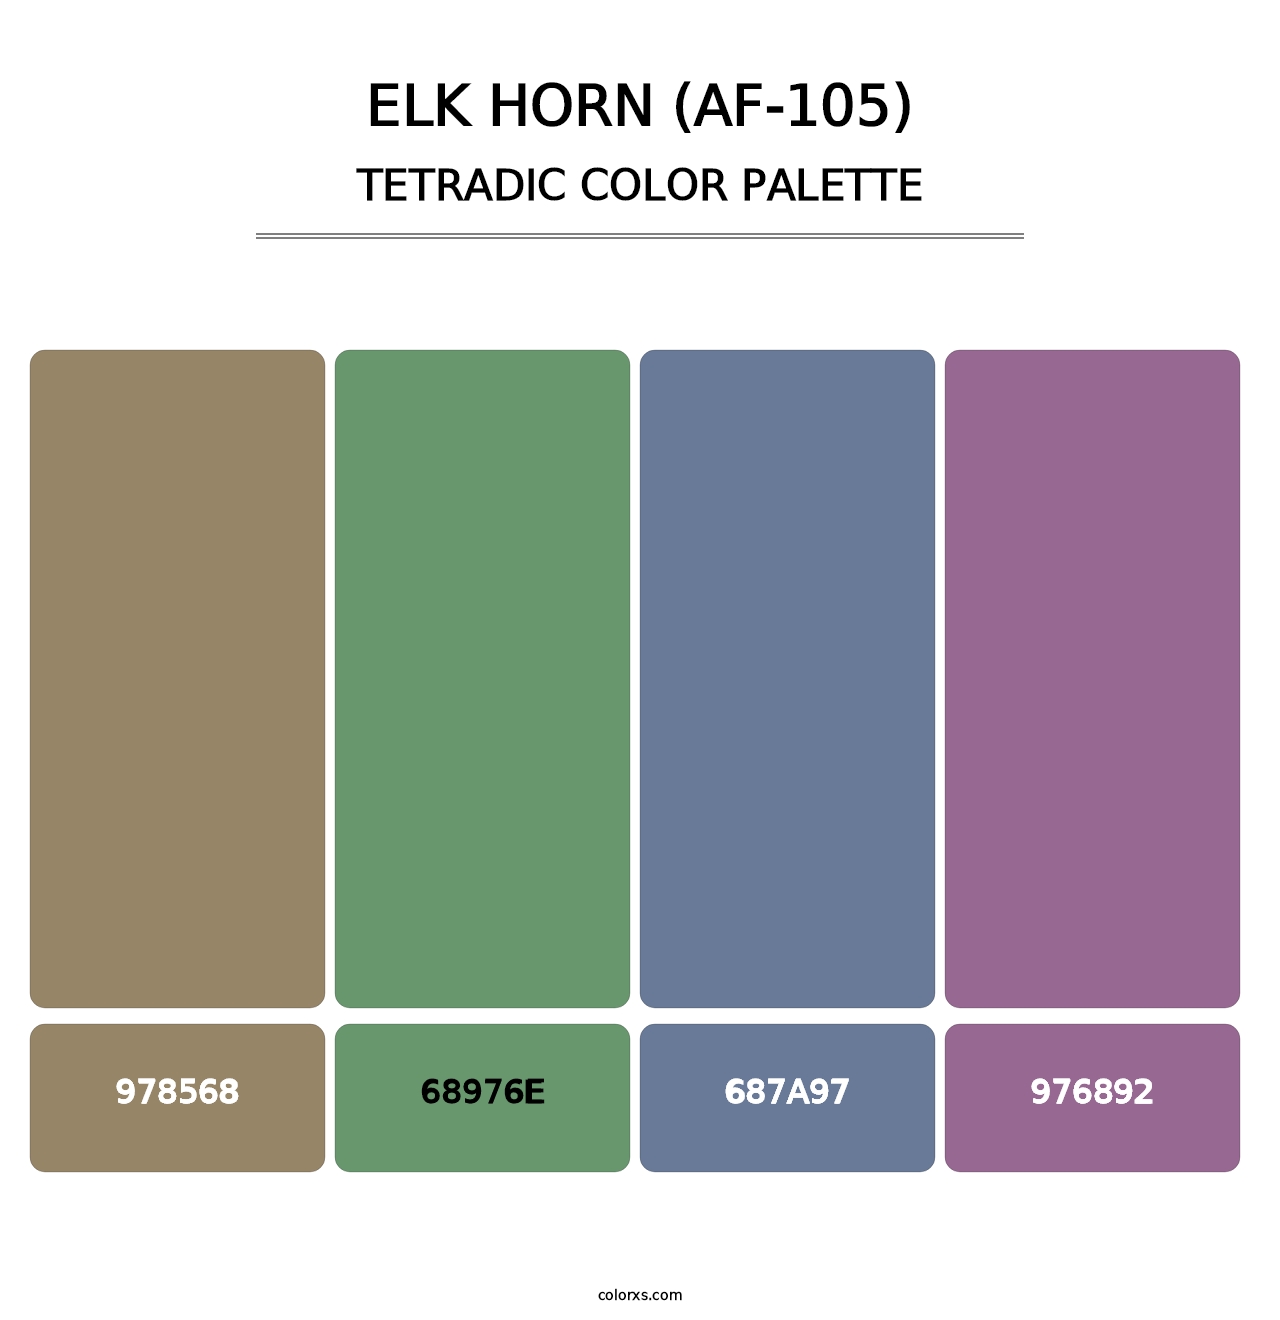 Elk Horn (AF-105) - Tetradic Color Palette